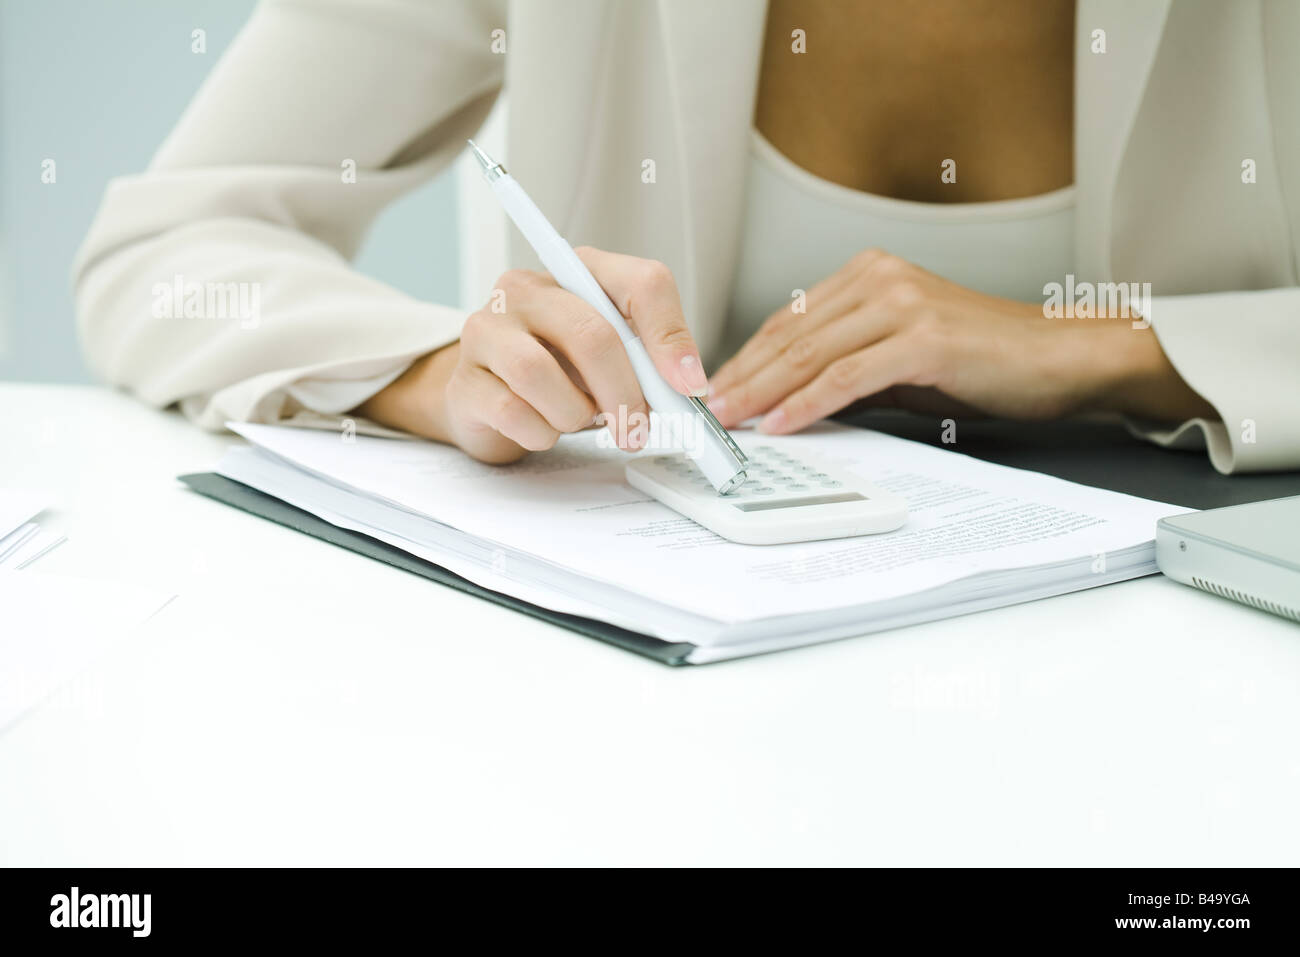 Femme professionnel à l'aide de la calculatrice, cropped view Banque D'Images